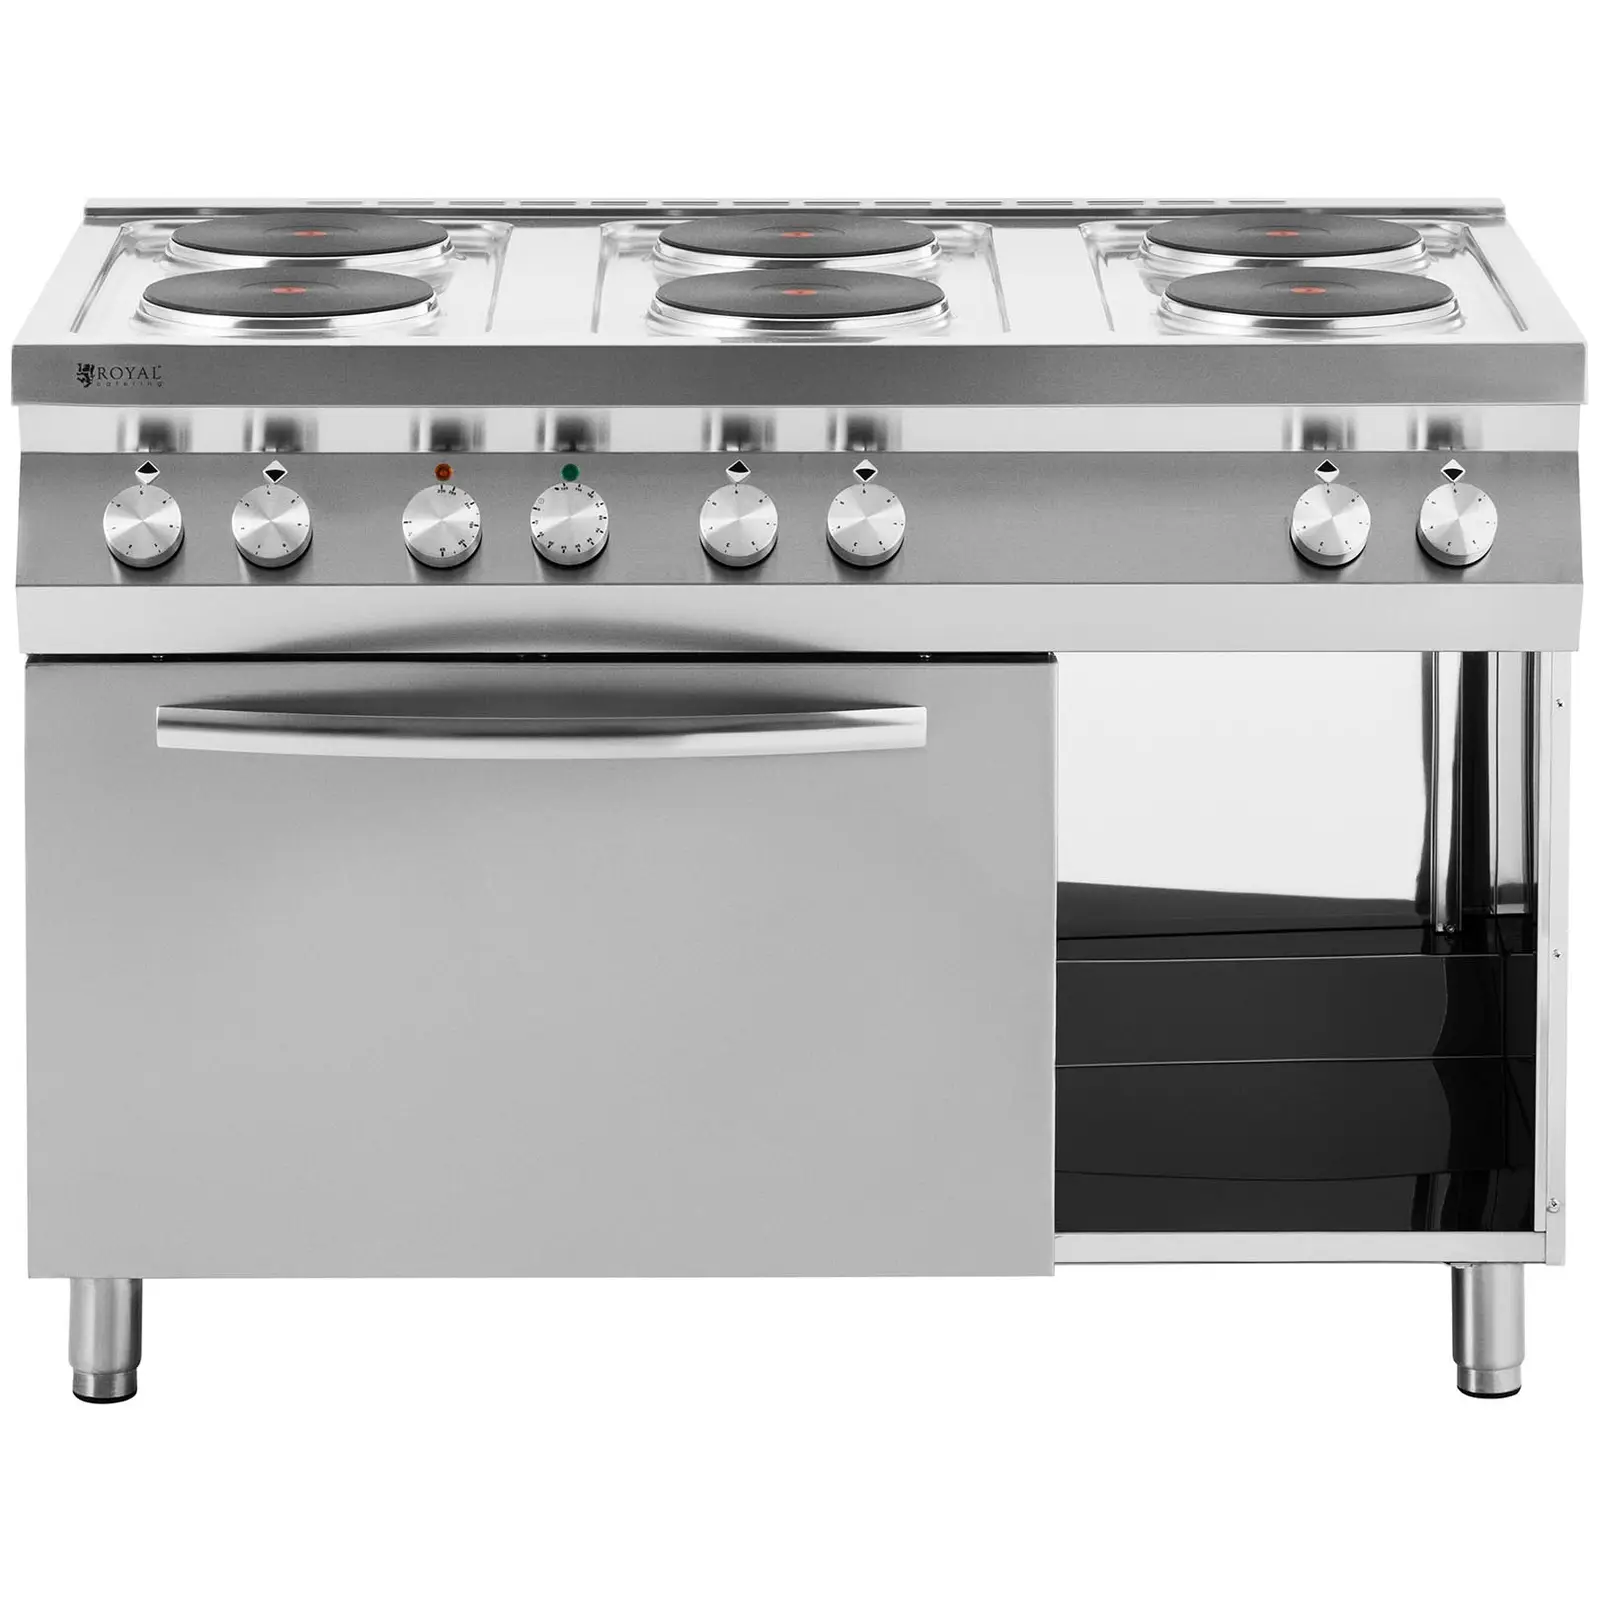 Cucina elettrica professionale - 15600 W - Piano - cottura con 6 fornelli - Con forno a convezione - Armadietto - Royal Catering